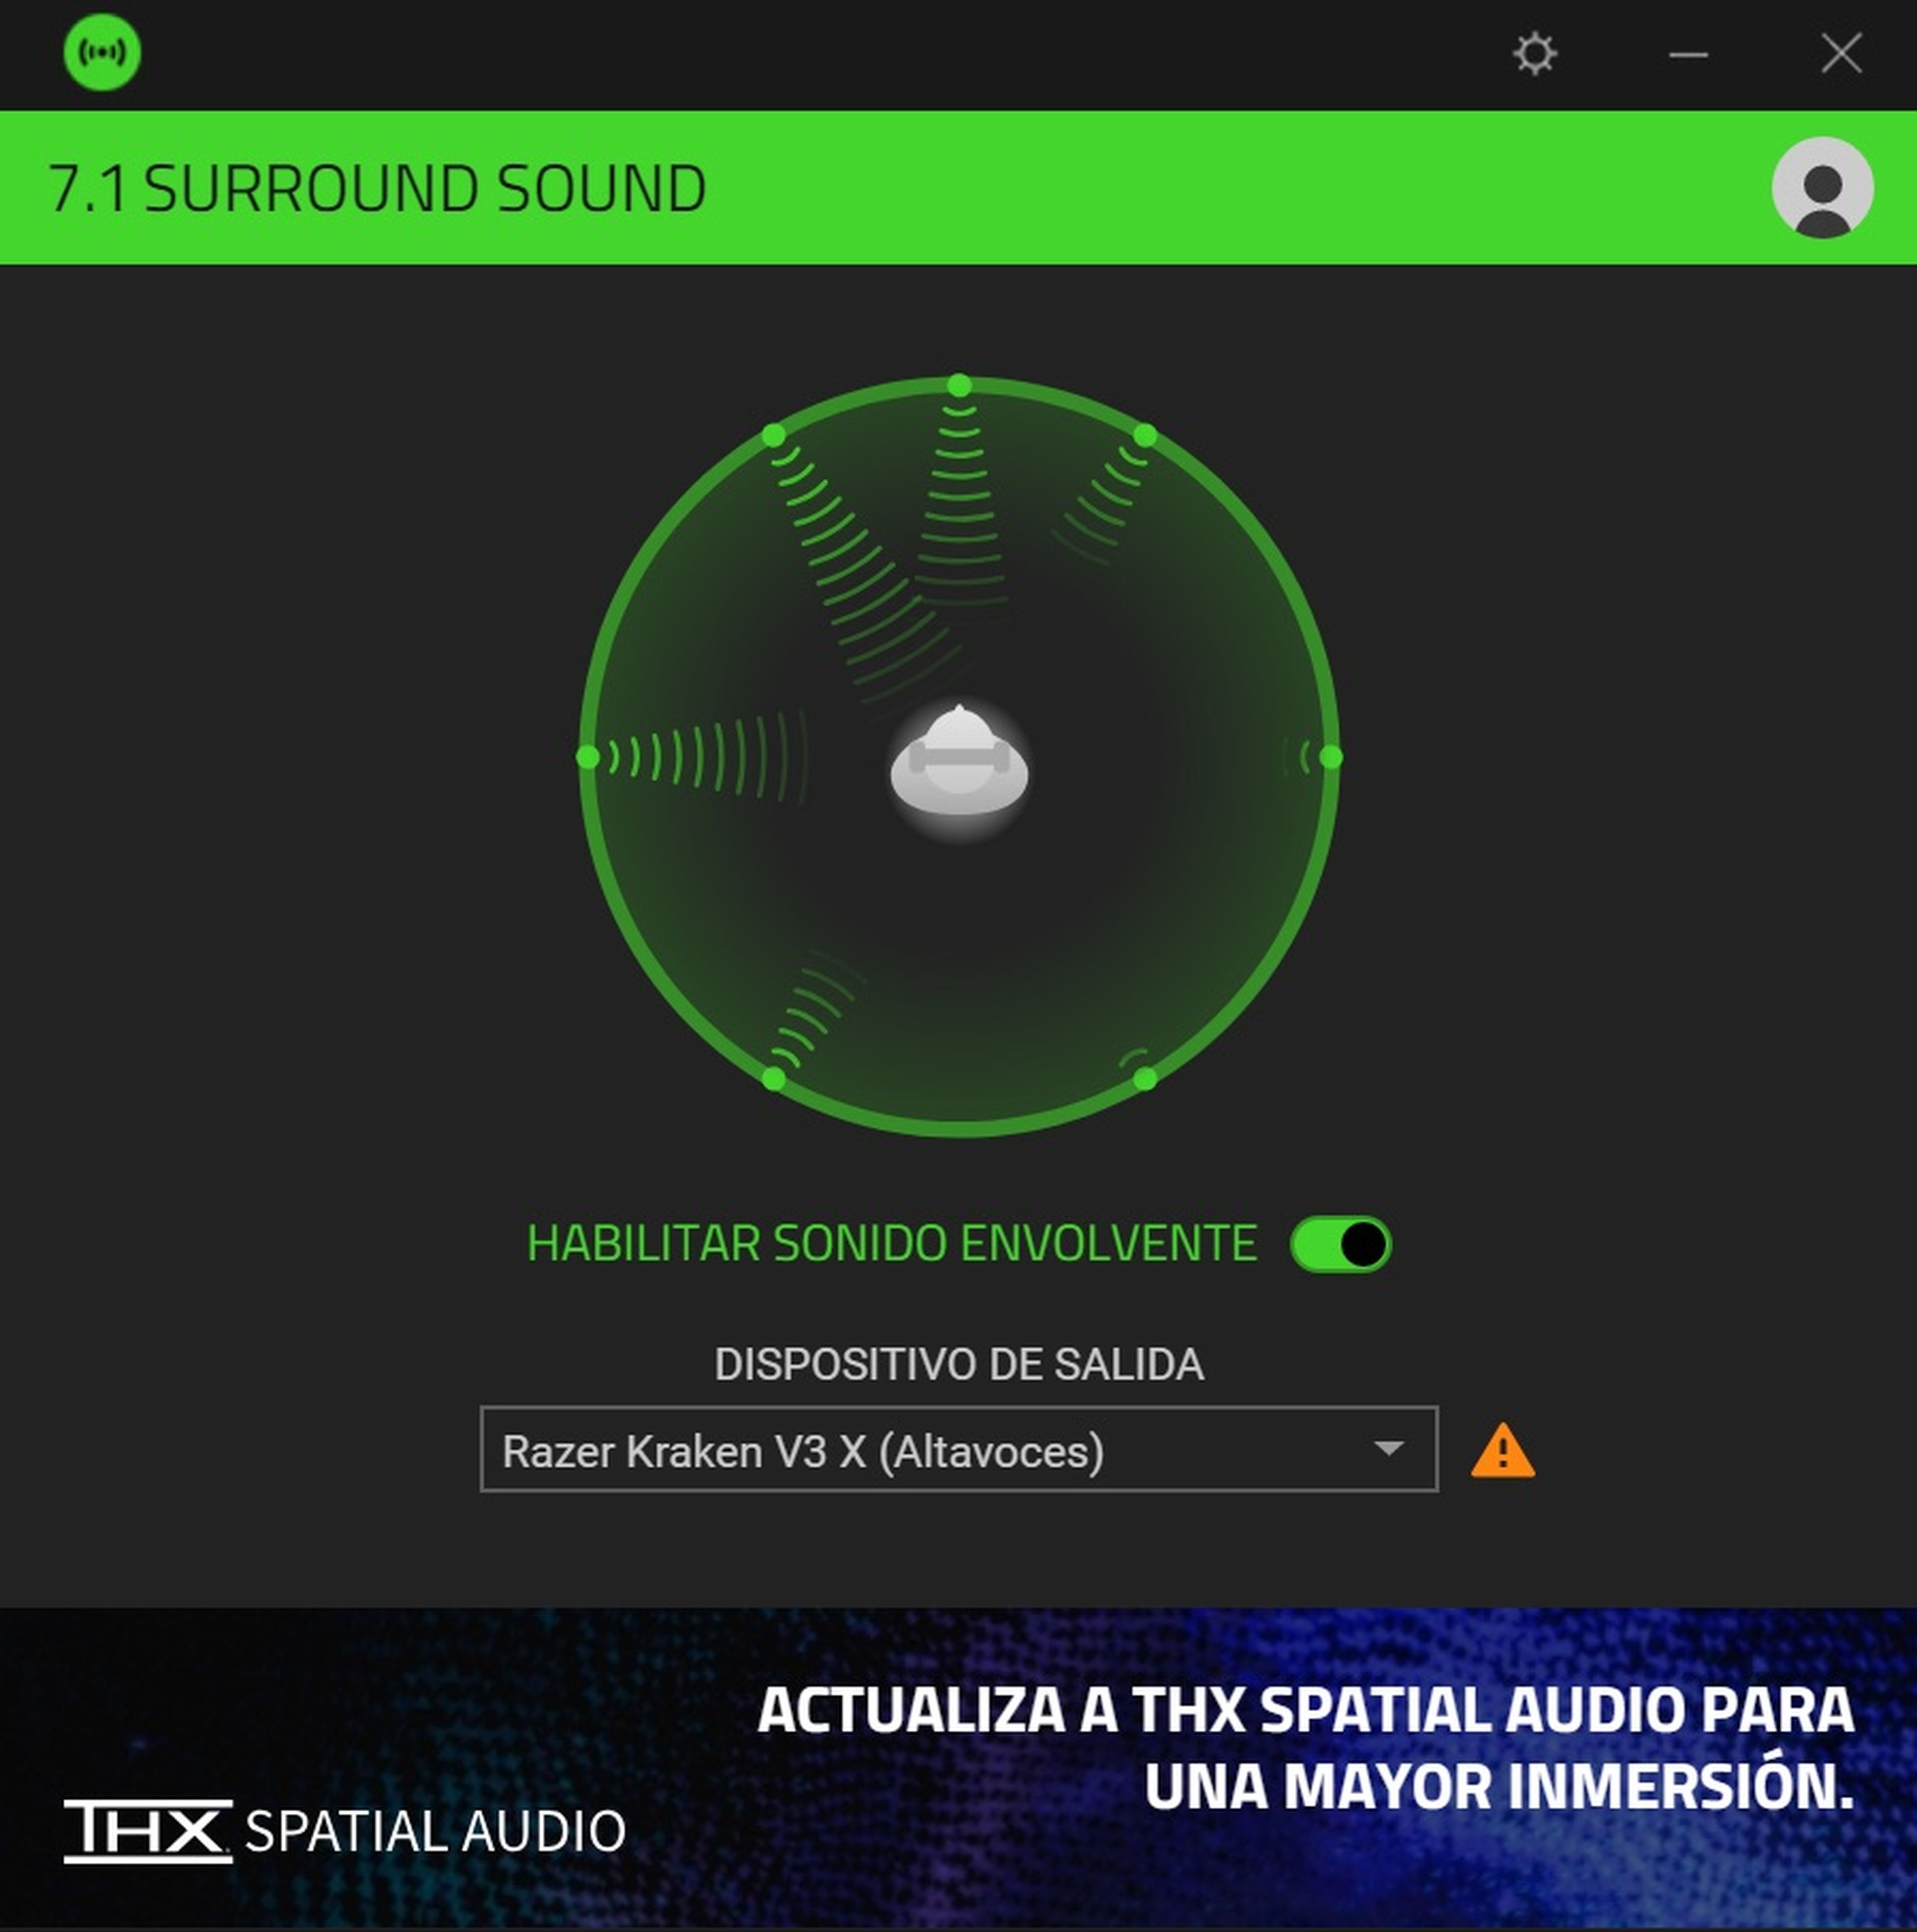 Razer 7.1 surround sound app